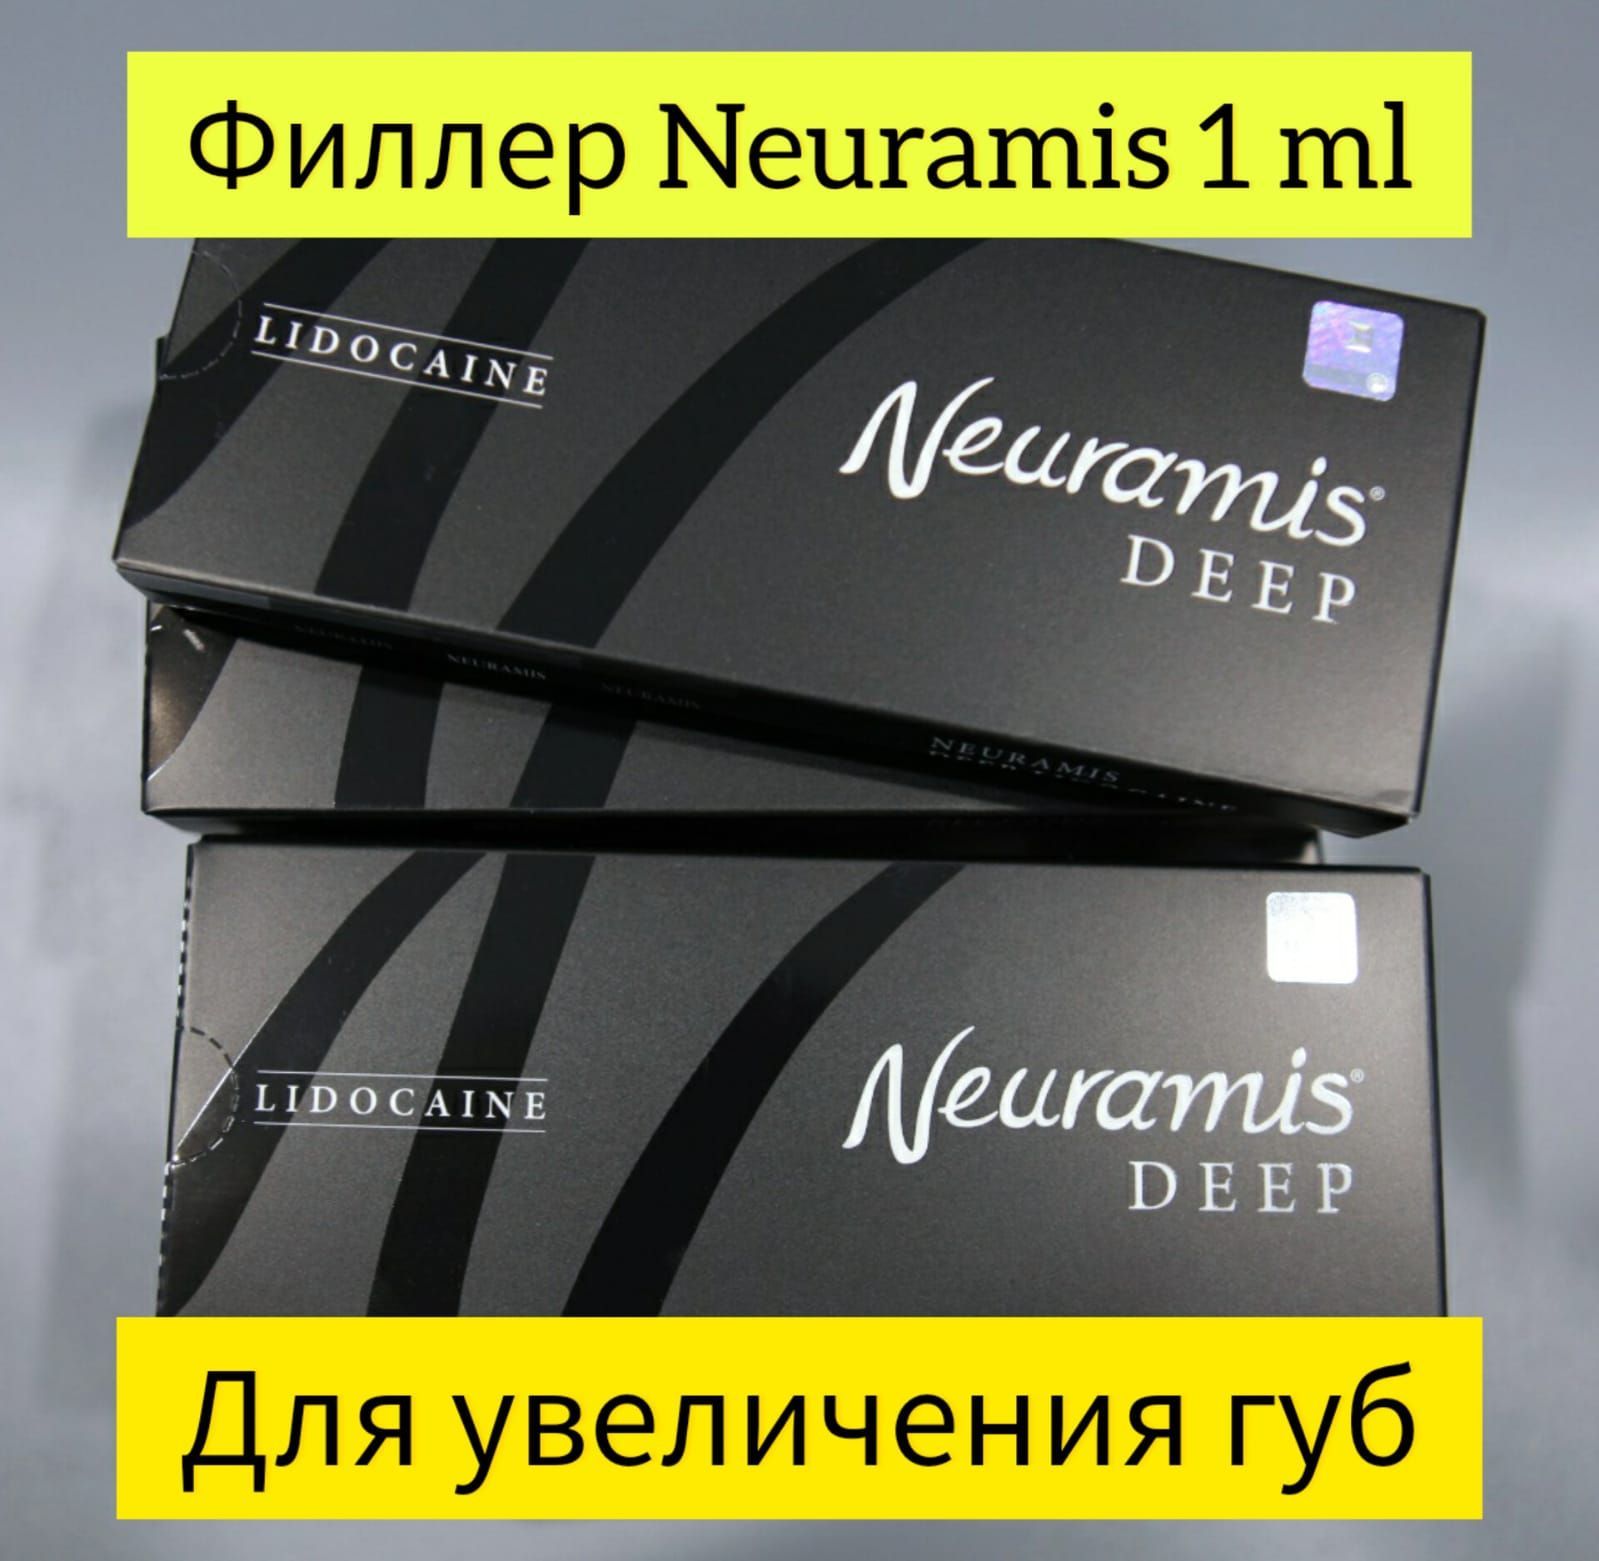 Neuramis филлер отзывы. Неурамис дип отзывы. Скулы Нейрамис отзывы. Препарат Нейрамис для увеличения губ отзывы.